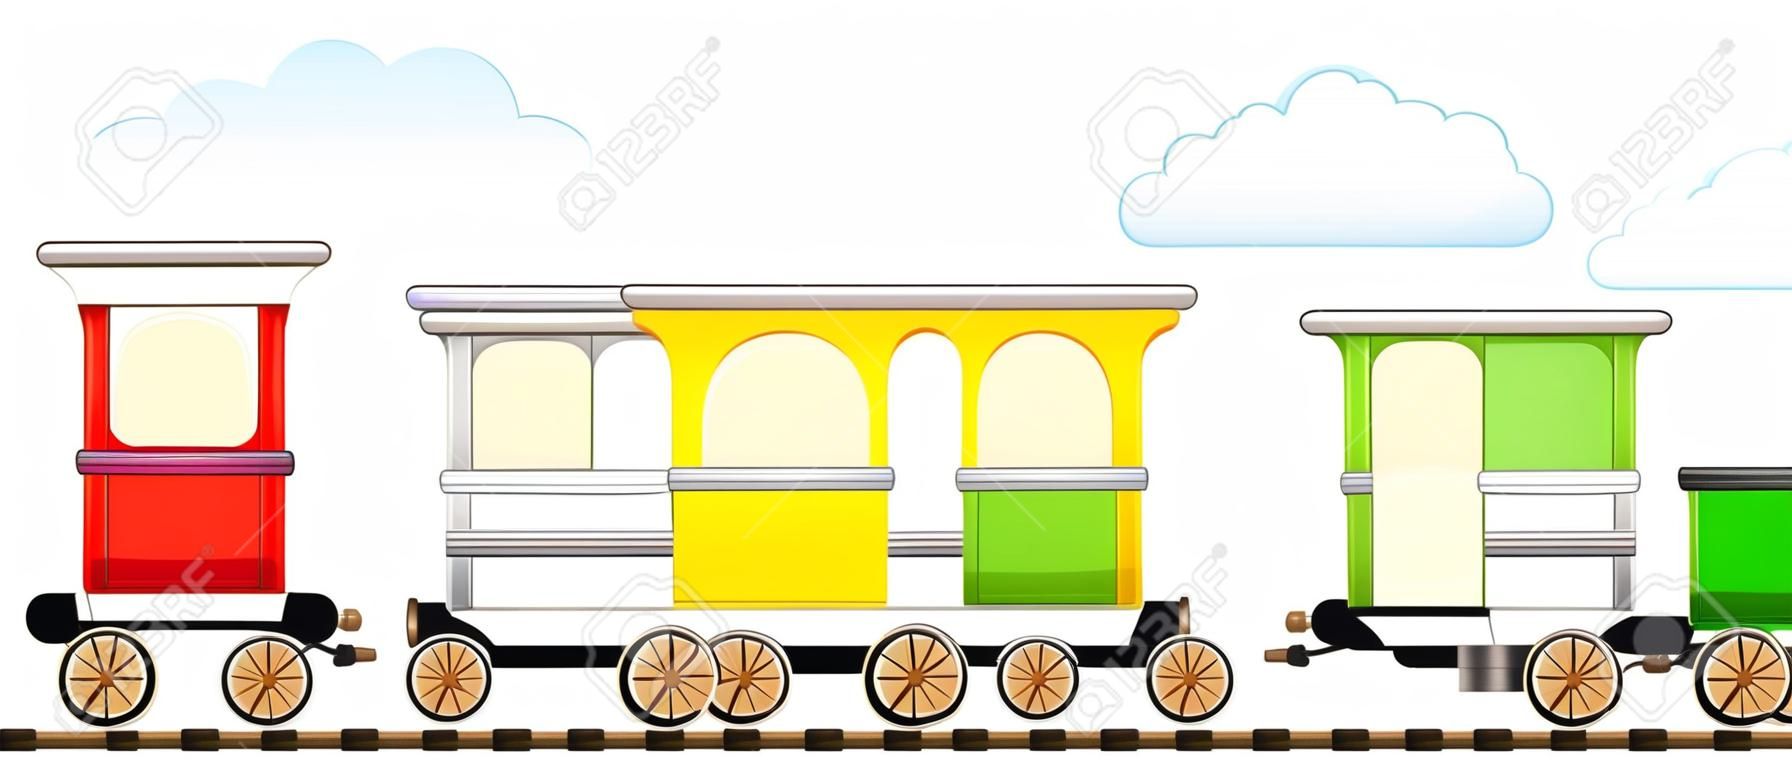 Cartoon isolierte niedlichen Zug mit bunten Wagen in Eisenbahn